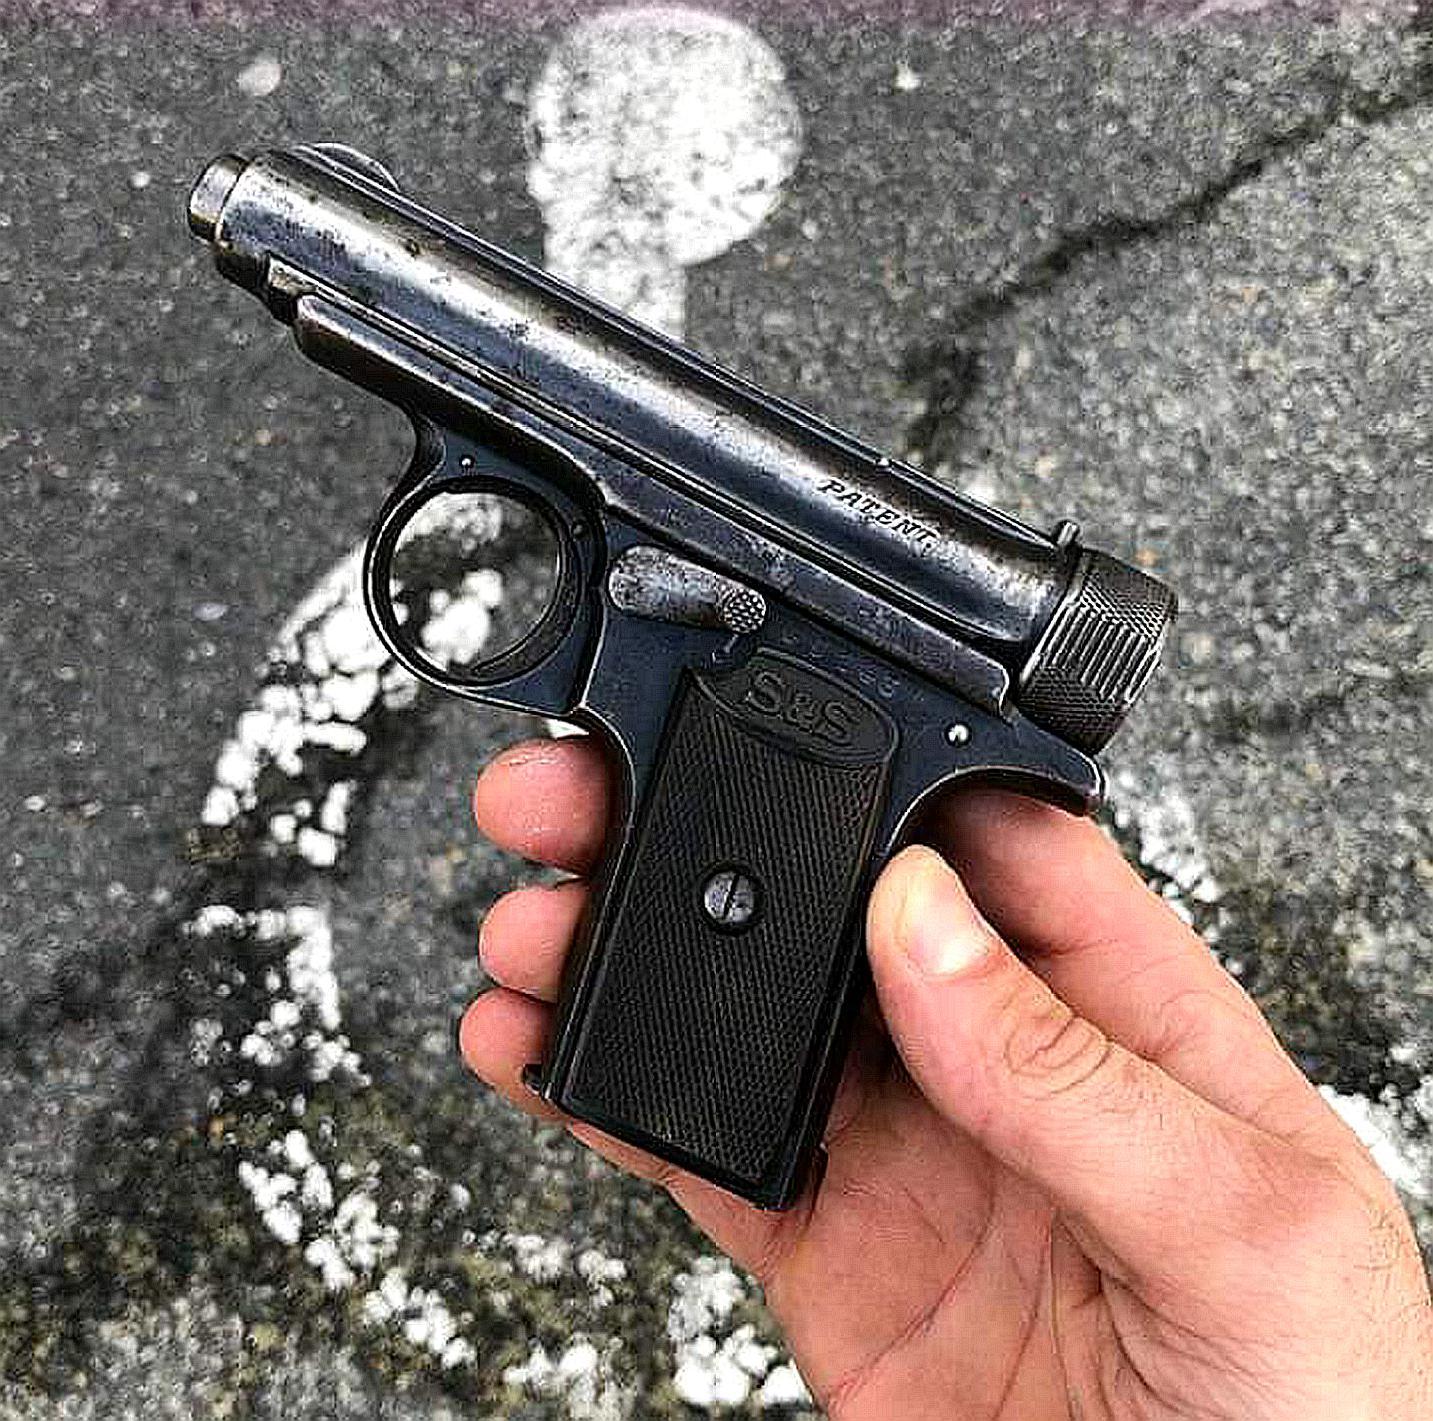 瓦尔特p38手枪,是纳粹德国的一种半自动手枪 转载自百家号作者:大刘说